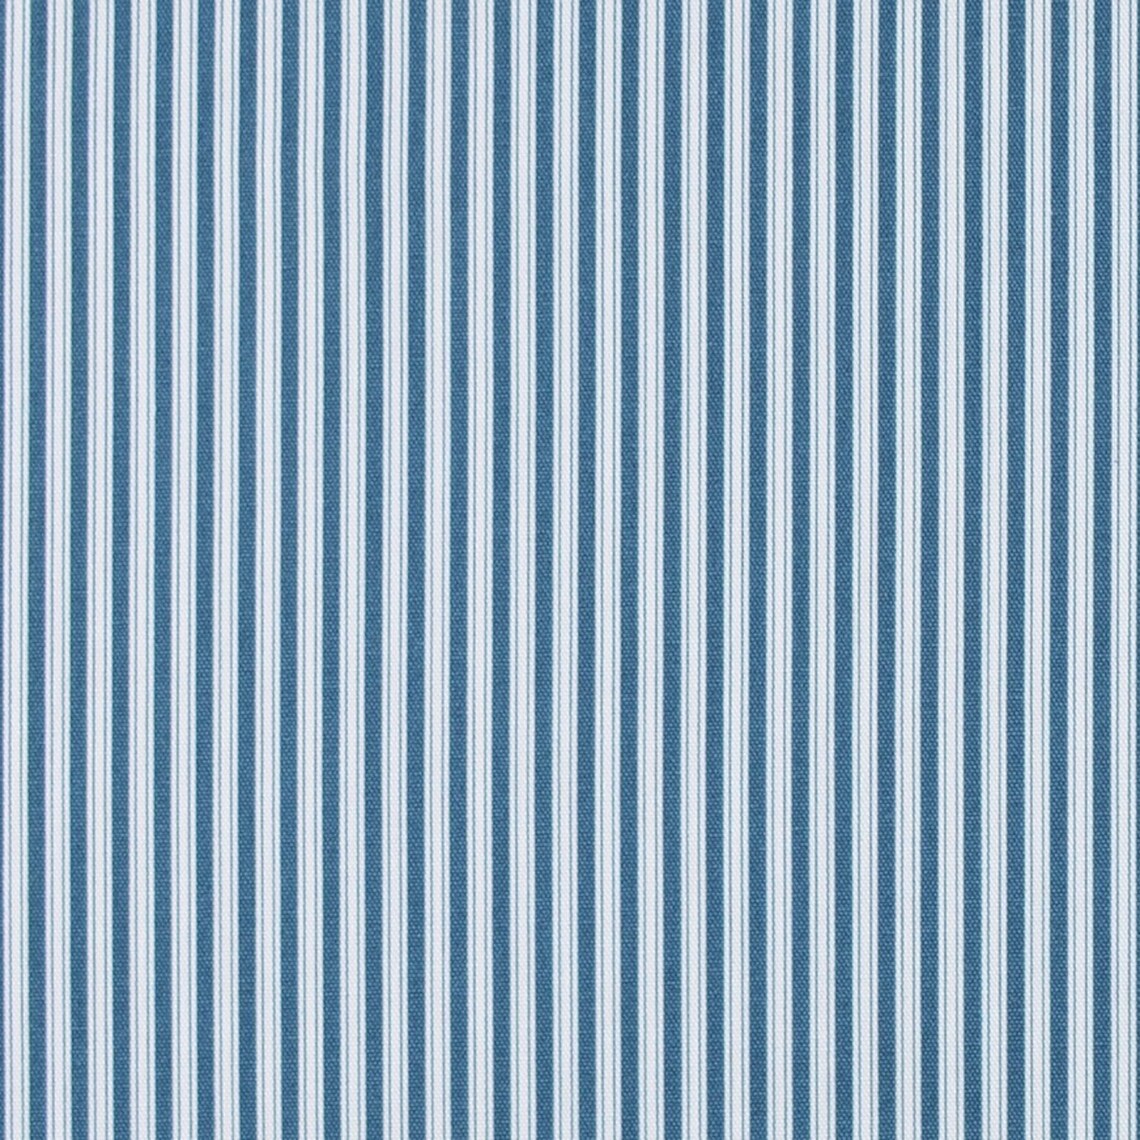 duvet cover in Polo Navy Blue Stripe on White